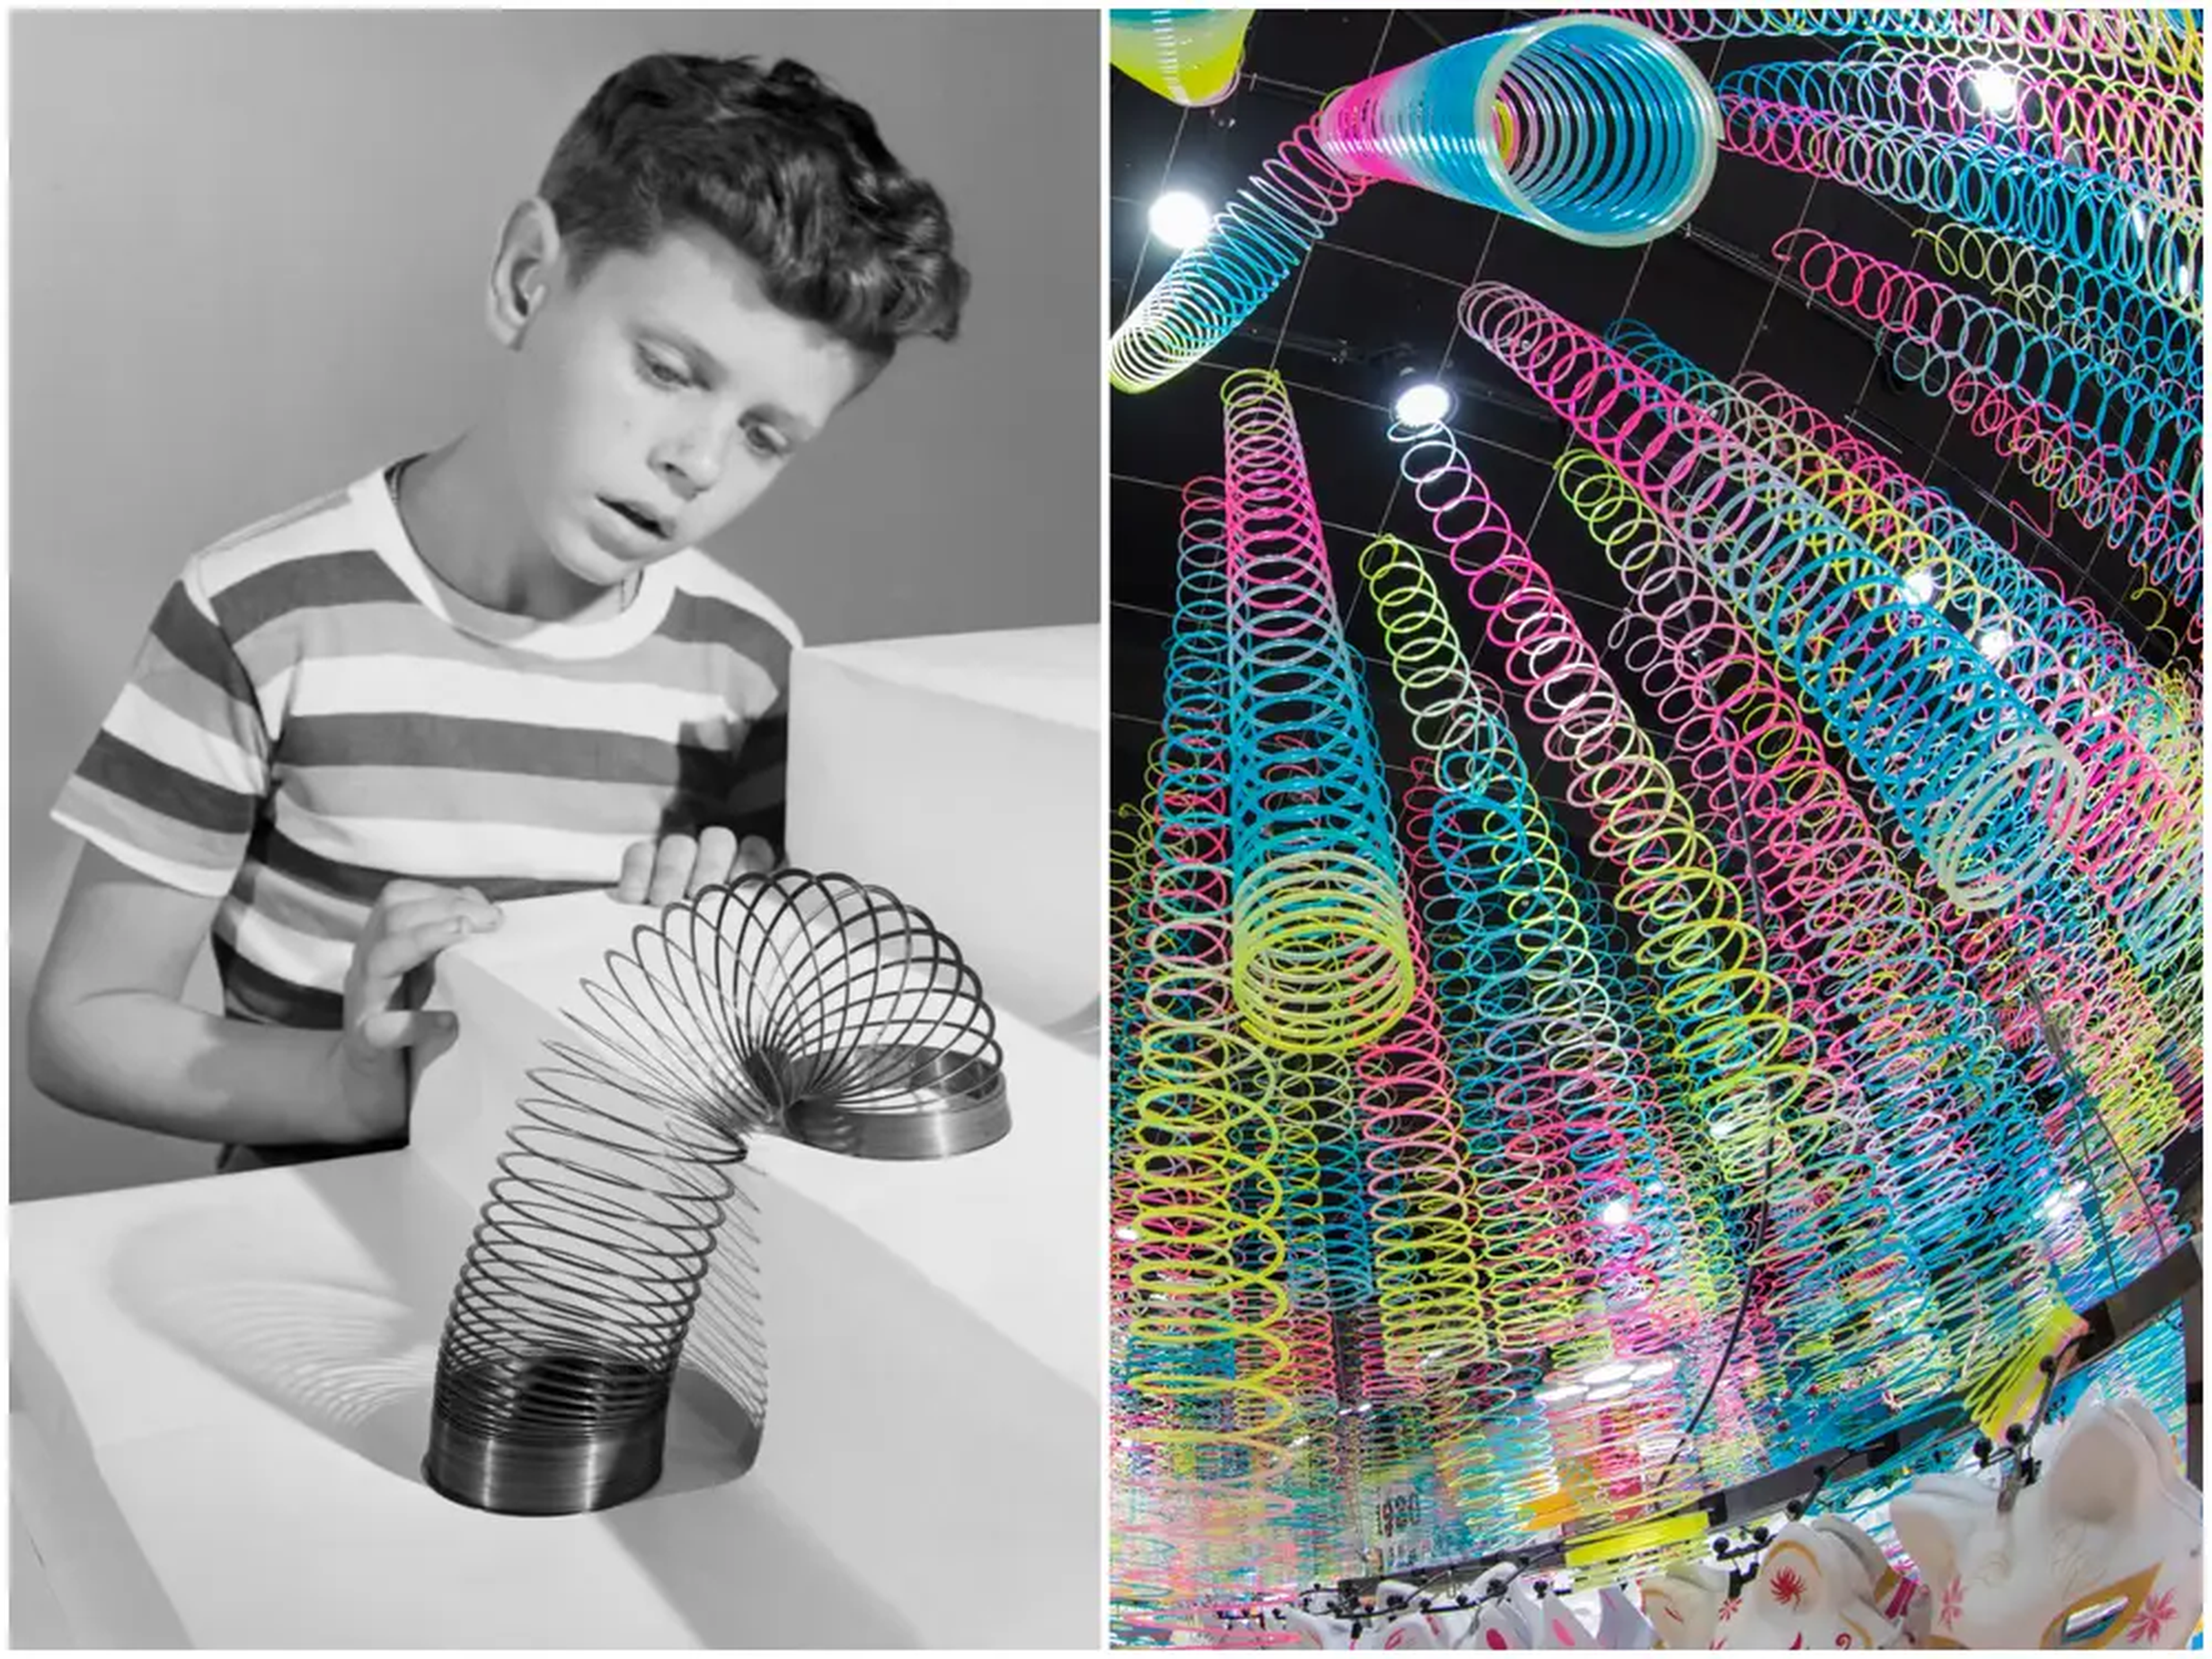 La forma original del Slinky era una larga espiral de metal. Ahora, el amado juguete se usa incluso como decoración.